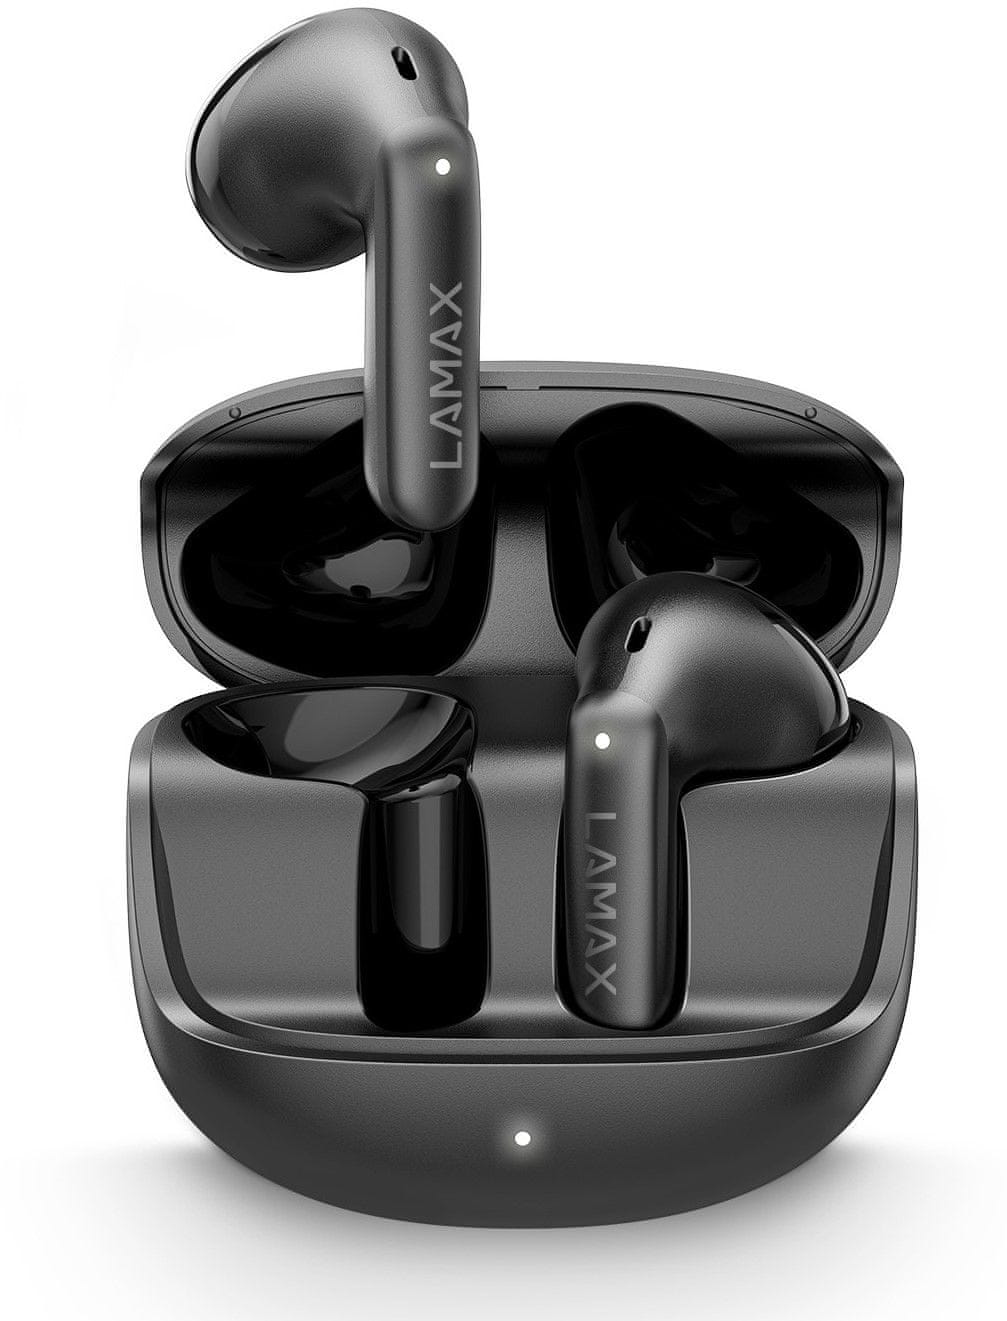  bezdrátová Bluetooth sluchátka lamax tones1 nezkreslený zvuk pohodlná konstrukce uzavřená hlasový asistent mikrofon pro handsfree dlouhá výdrž na nabití zabudované ovládání 